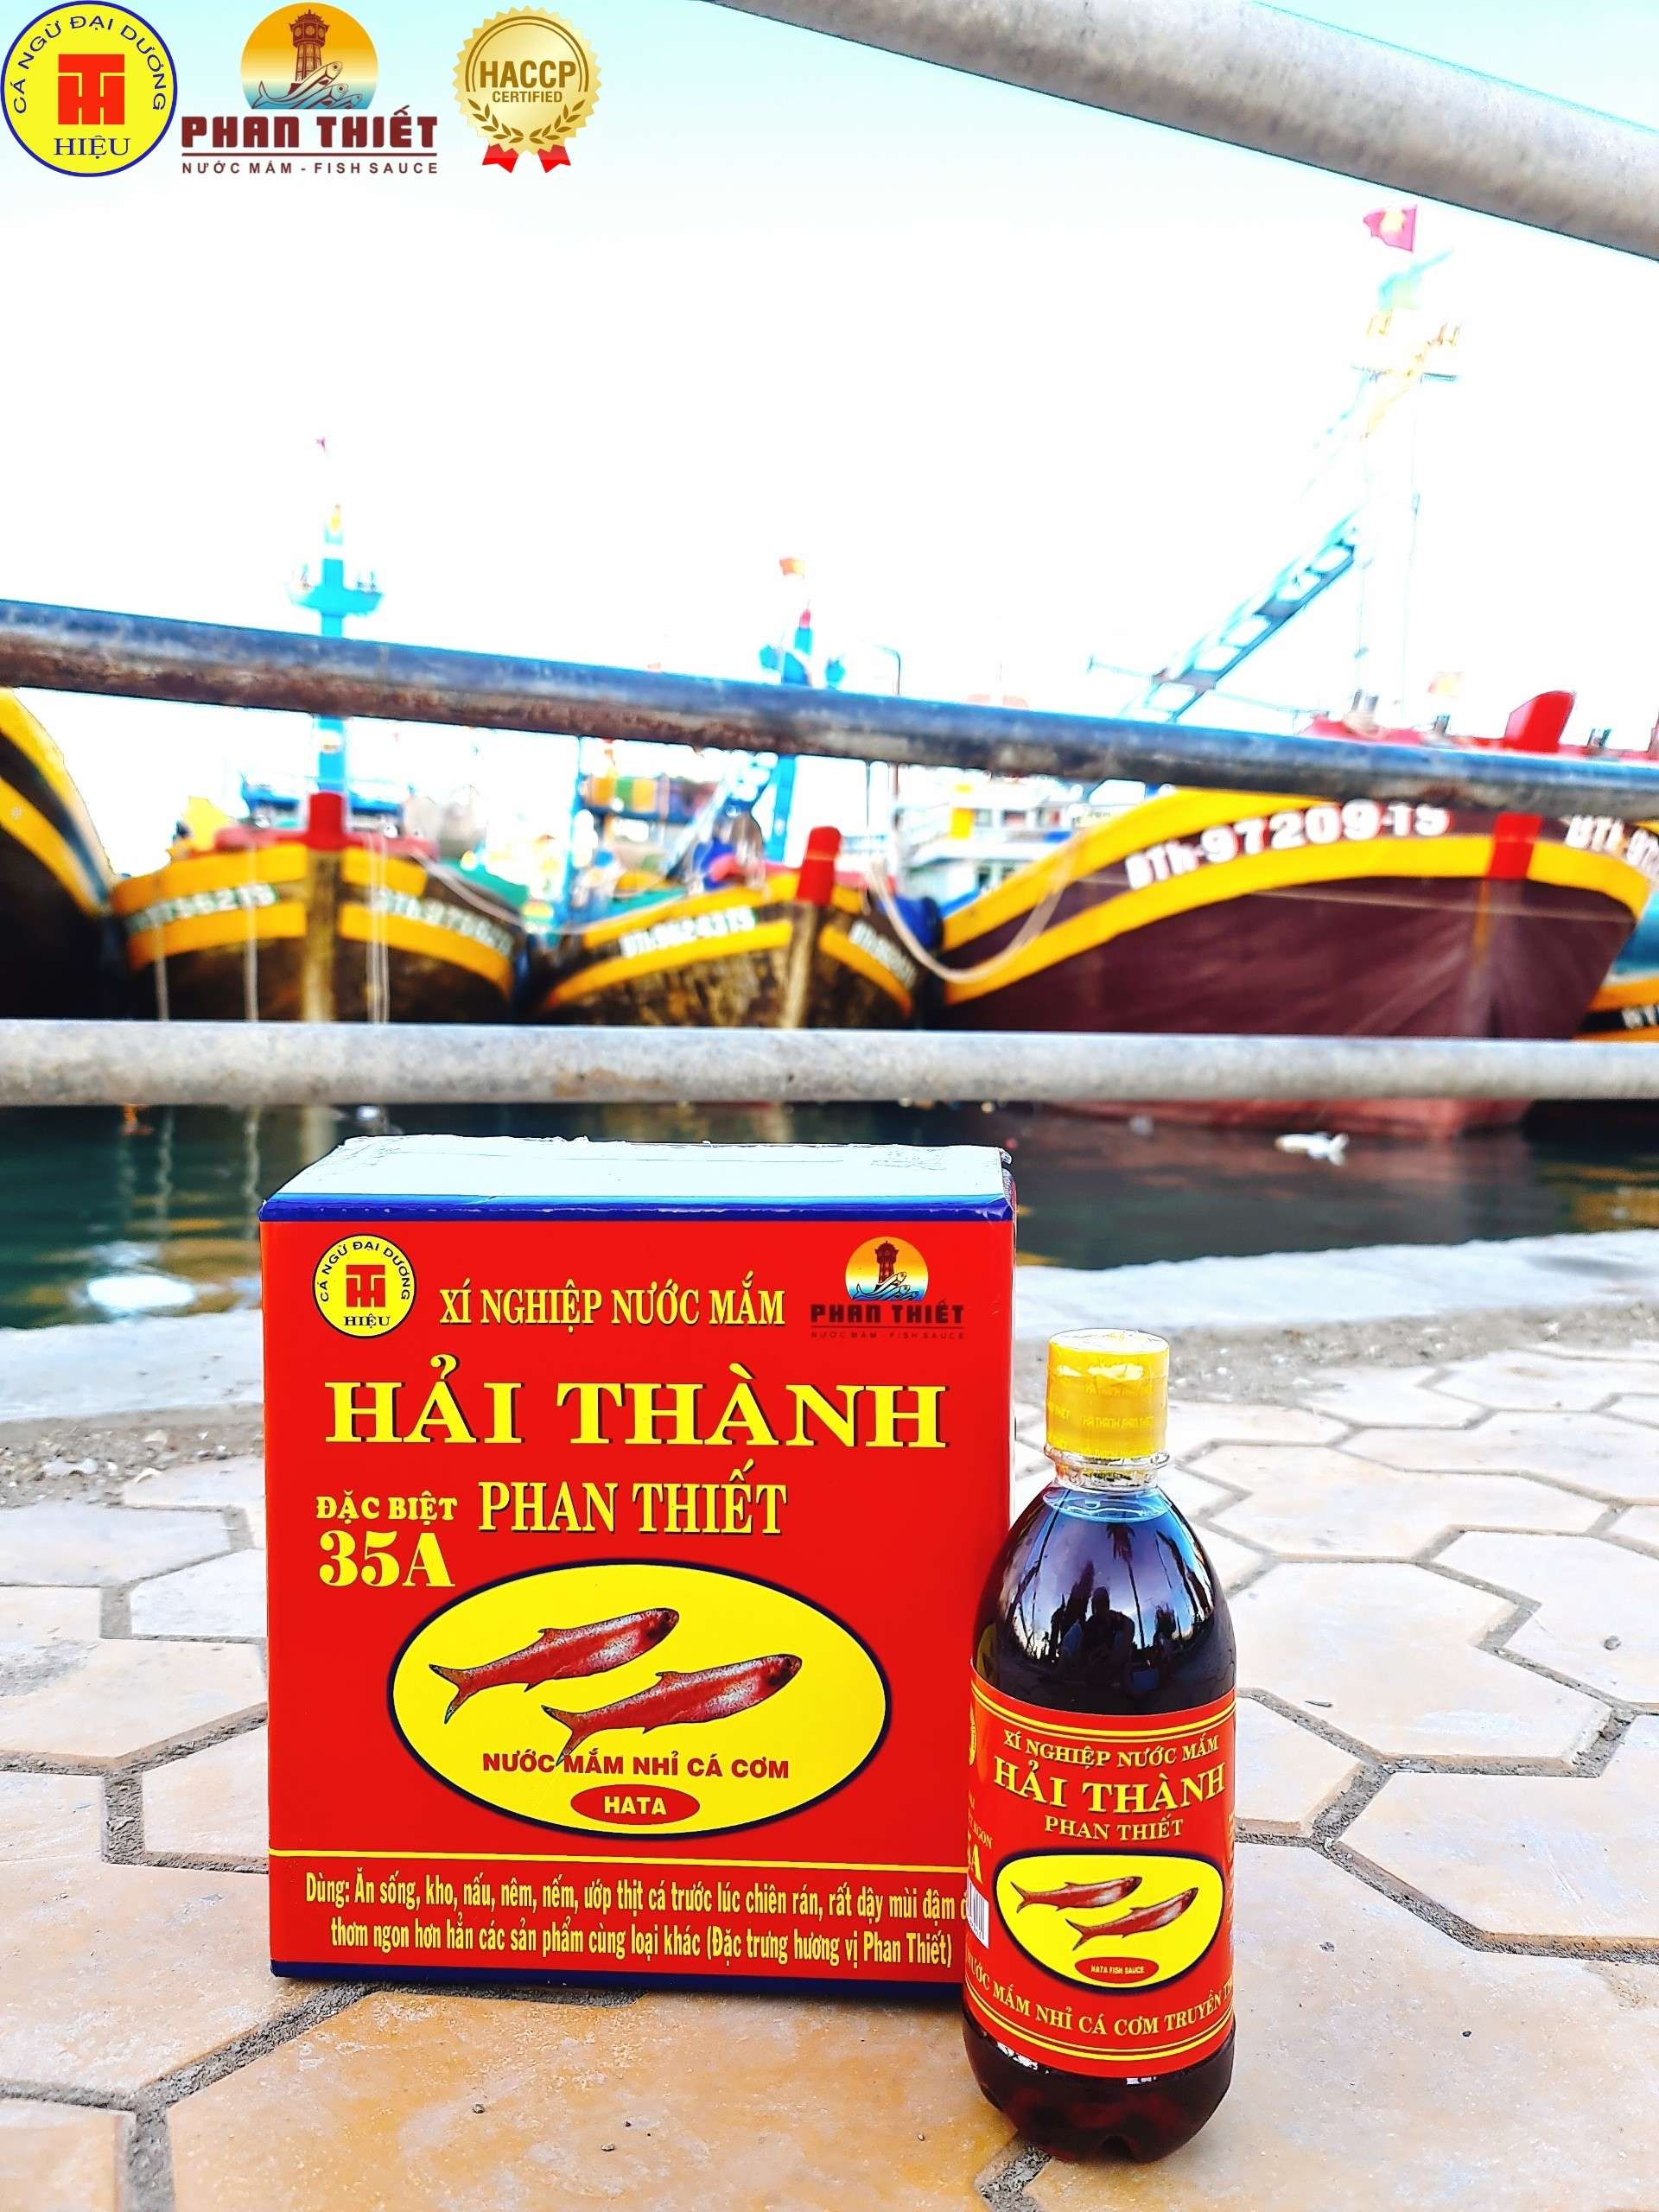 Nước Mắm Cá Cơm Truyền Thống Hải Thành Phan Thiết 35A Nước mắm cá cơm nguyên chất không Ure gây hại, chất bảo quản, cao đạm cá cơm thuần tự nhiên, ưa dùng khẩu vị người Việt. Sản phẩm đã được chứng nhận an toàn, tốt cho sức khỏe HACCP